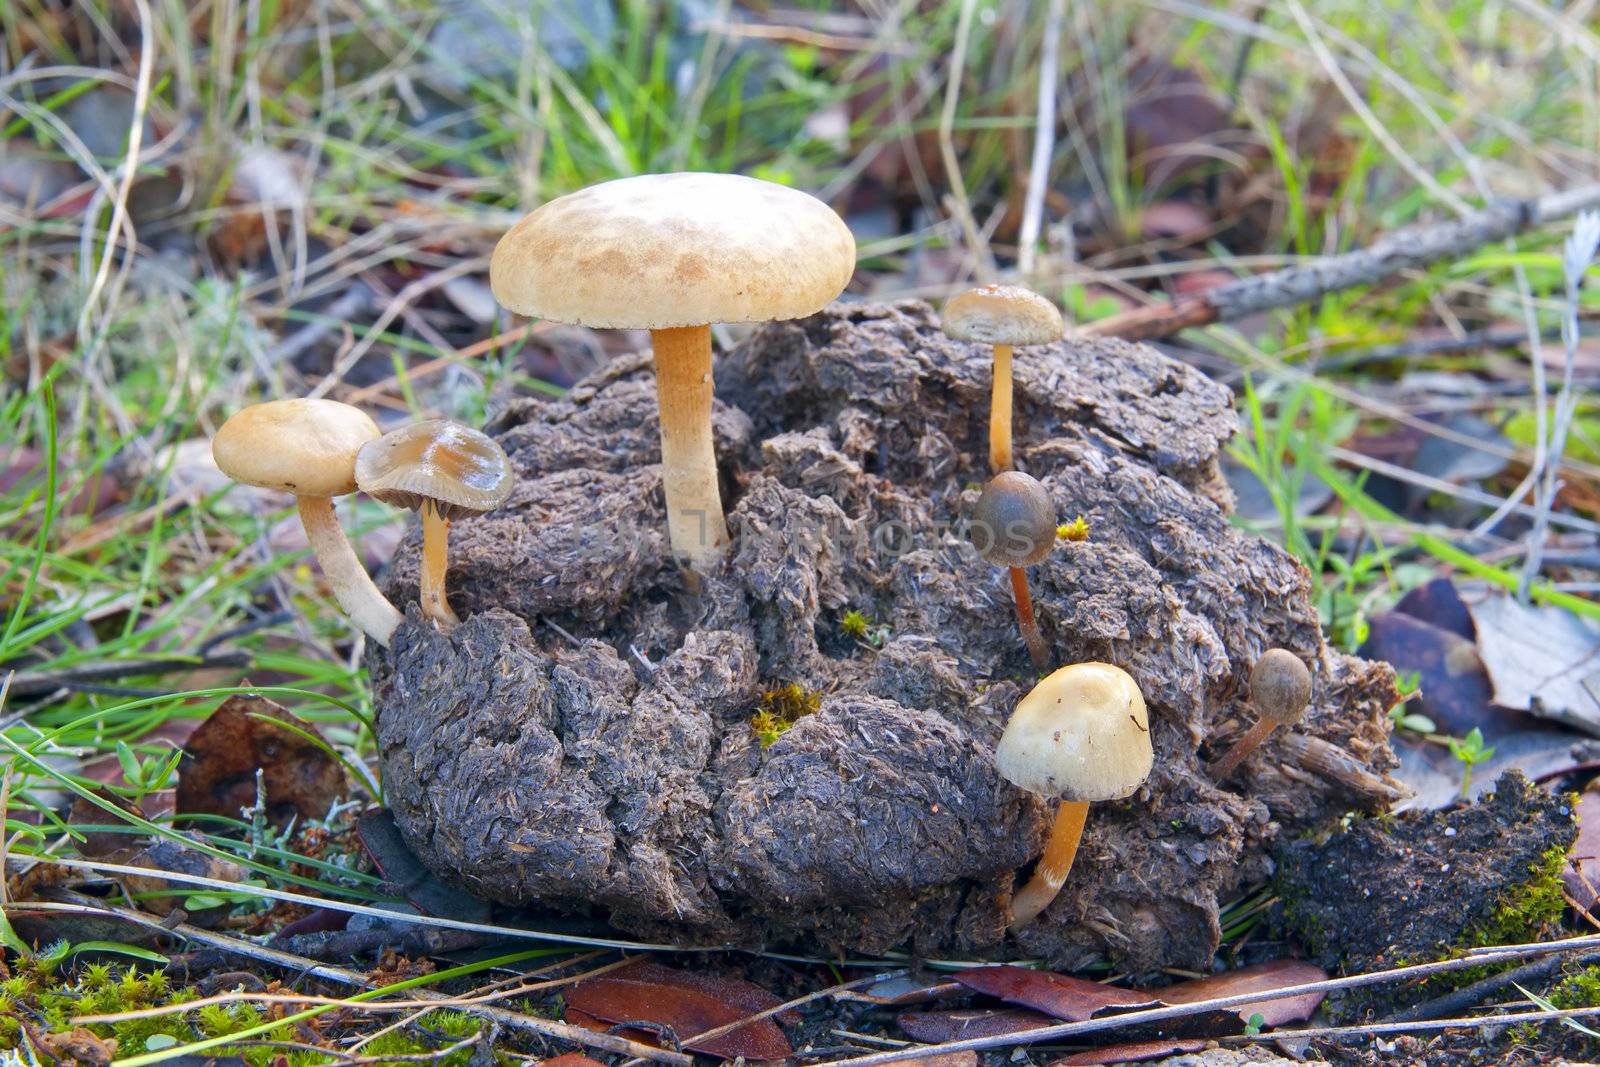 seasonal mushrooms by luiscar